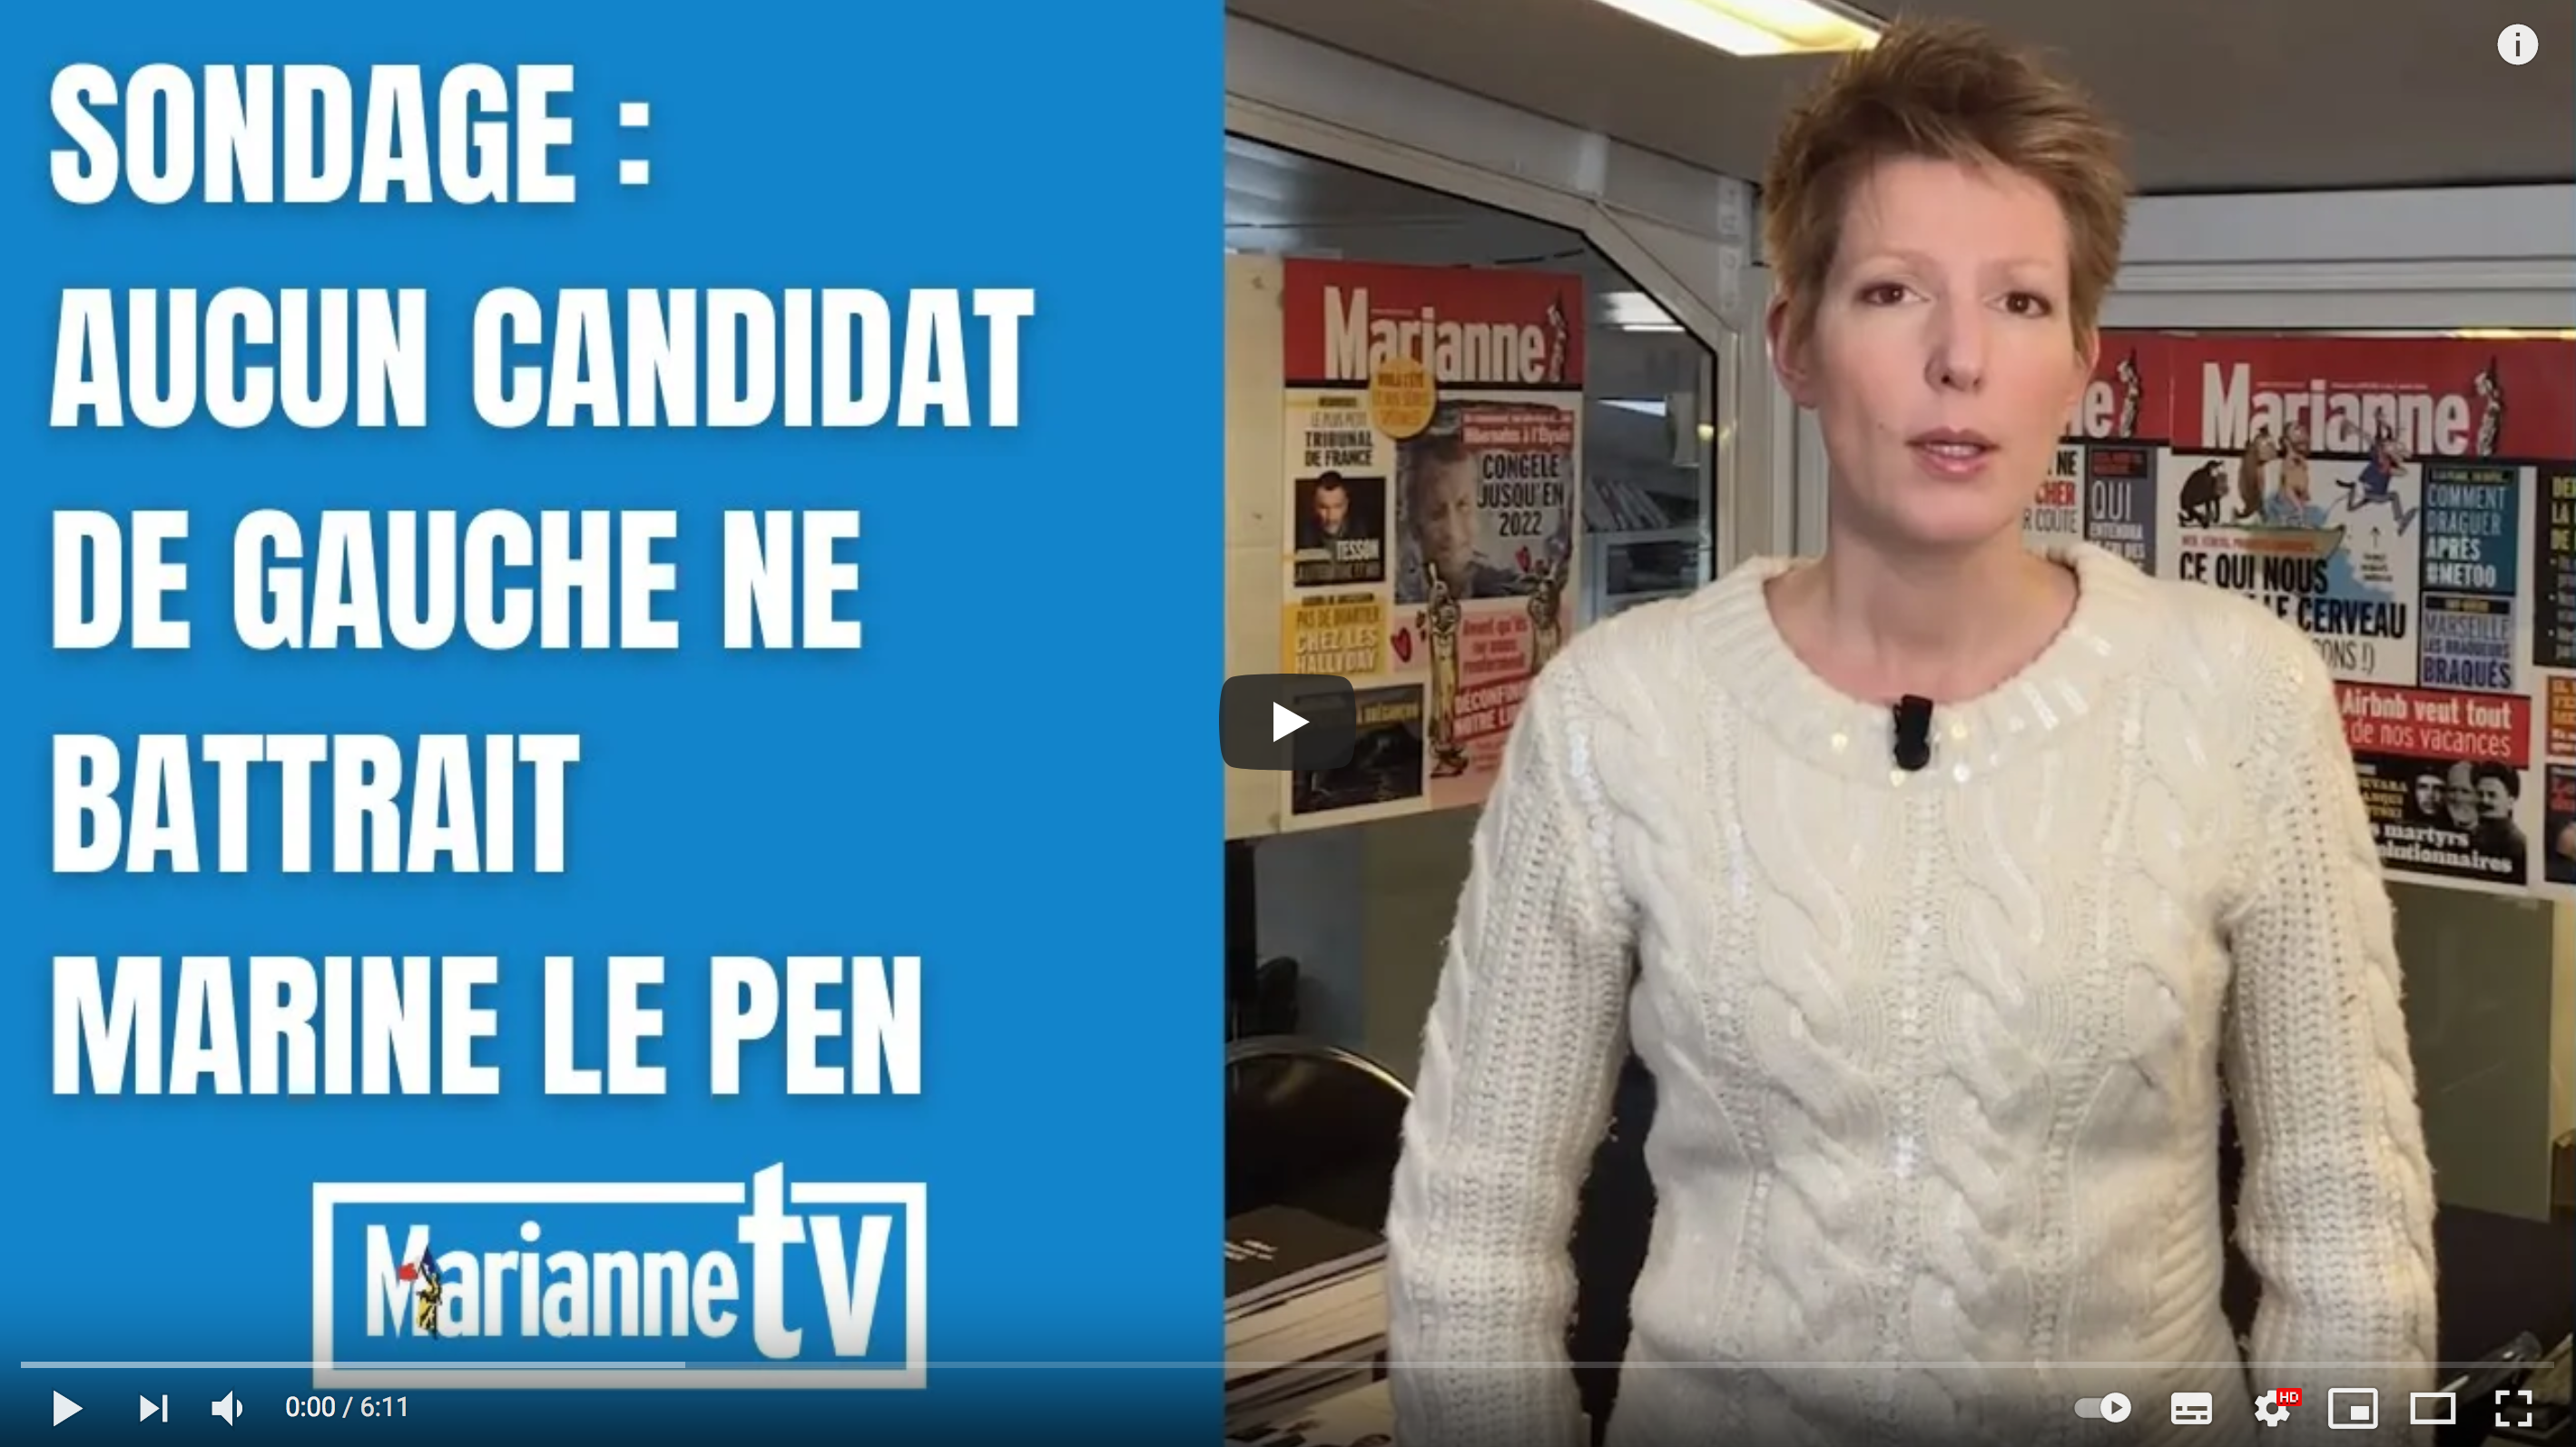 Sondage : aucun candidat de gauche ne battrait Marine Le Pen (Natacha Polony)